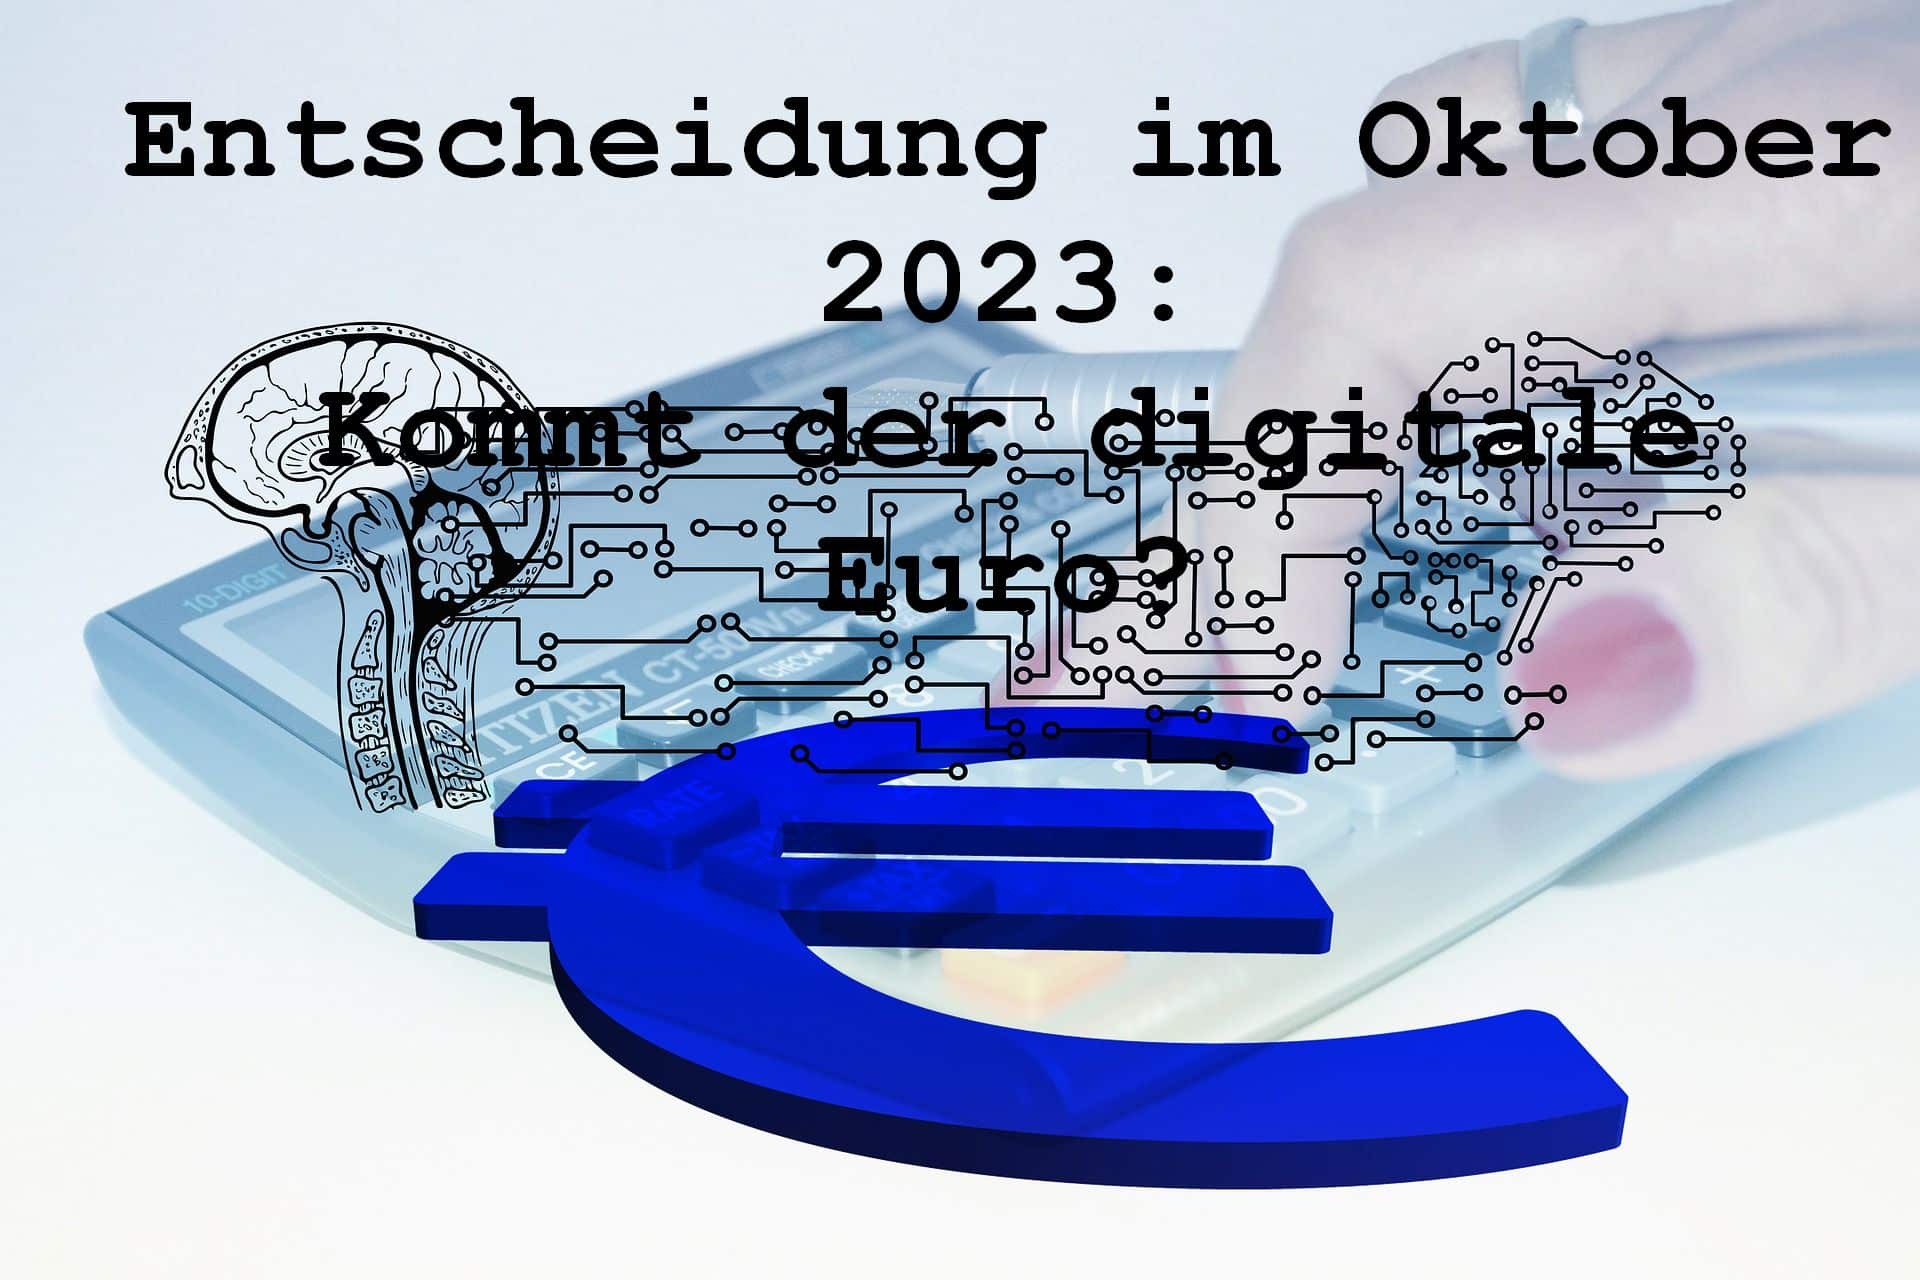 Bürger&Geld: Entscheidung im Oktober 2023 – kommt der digitale Euro für Verbraucher?